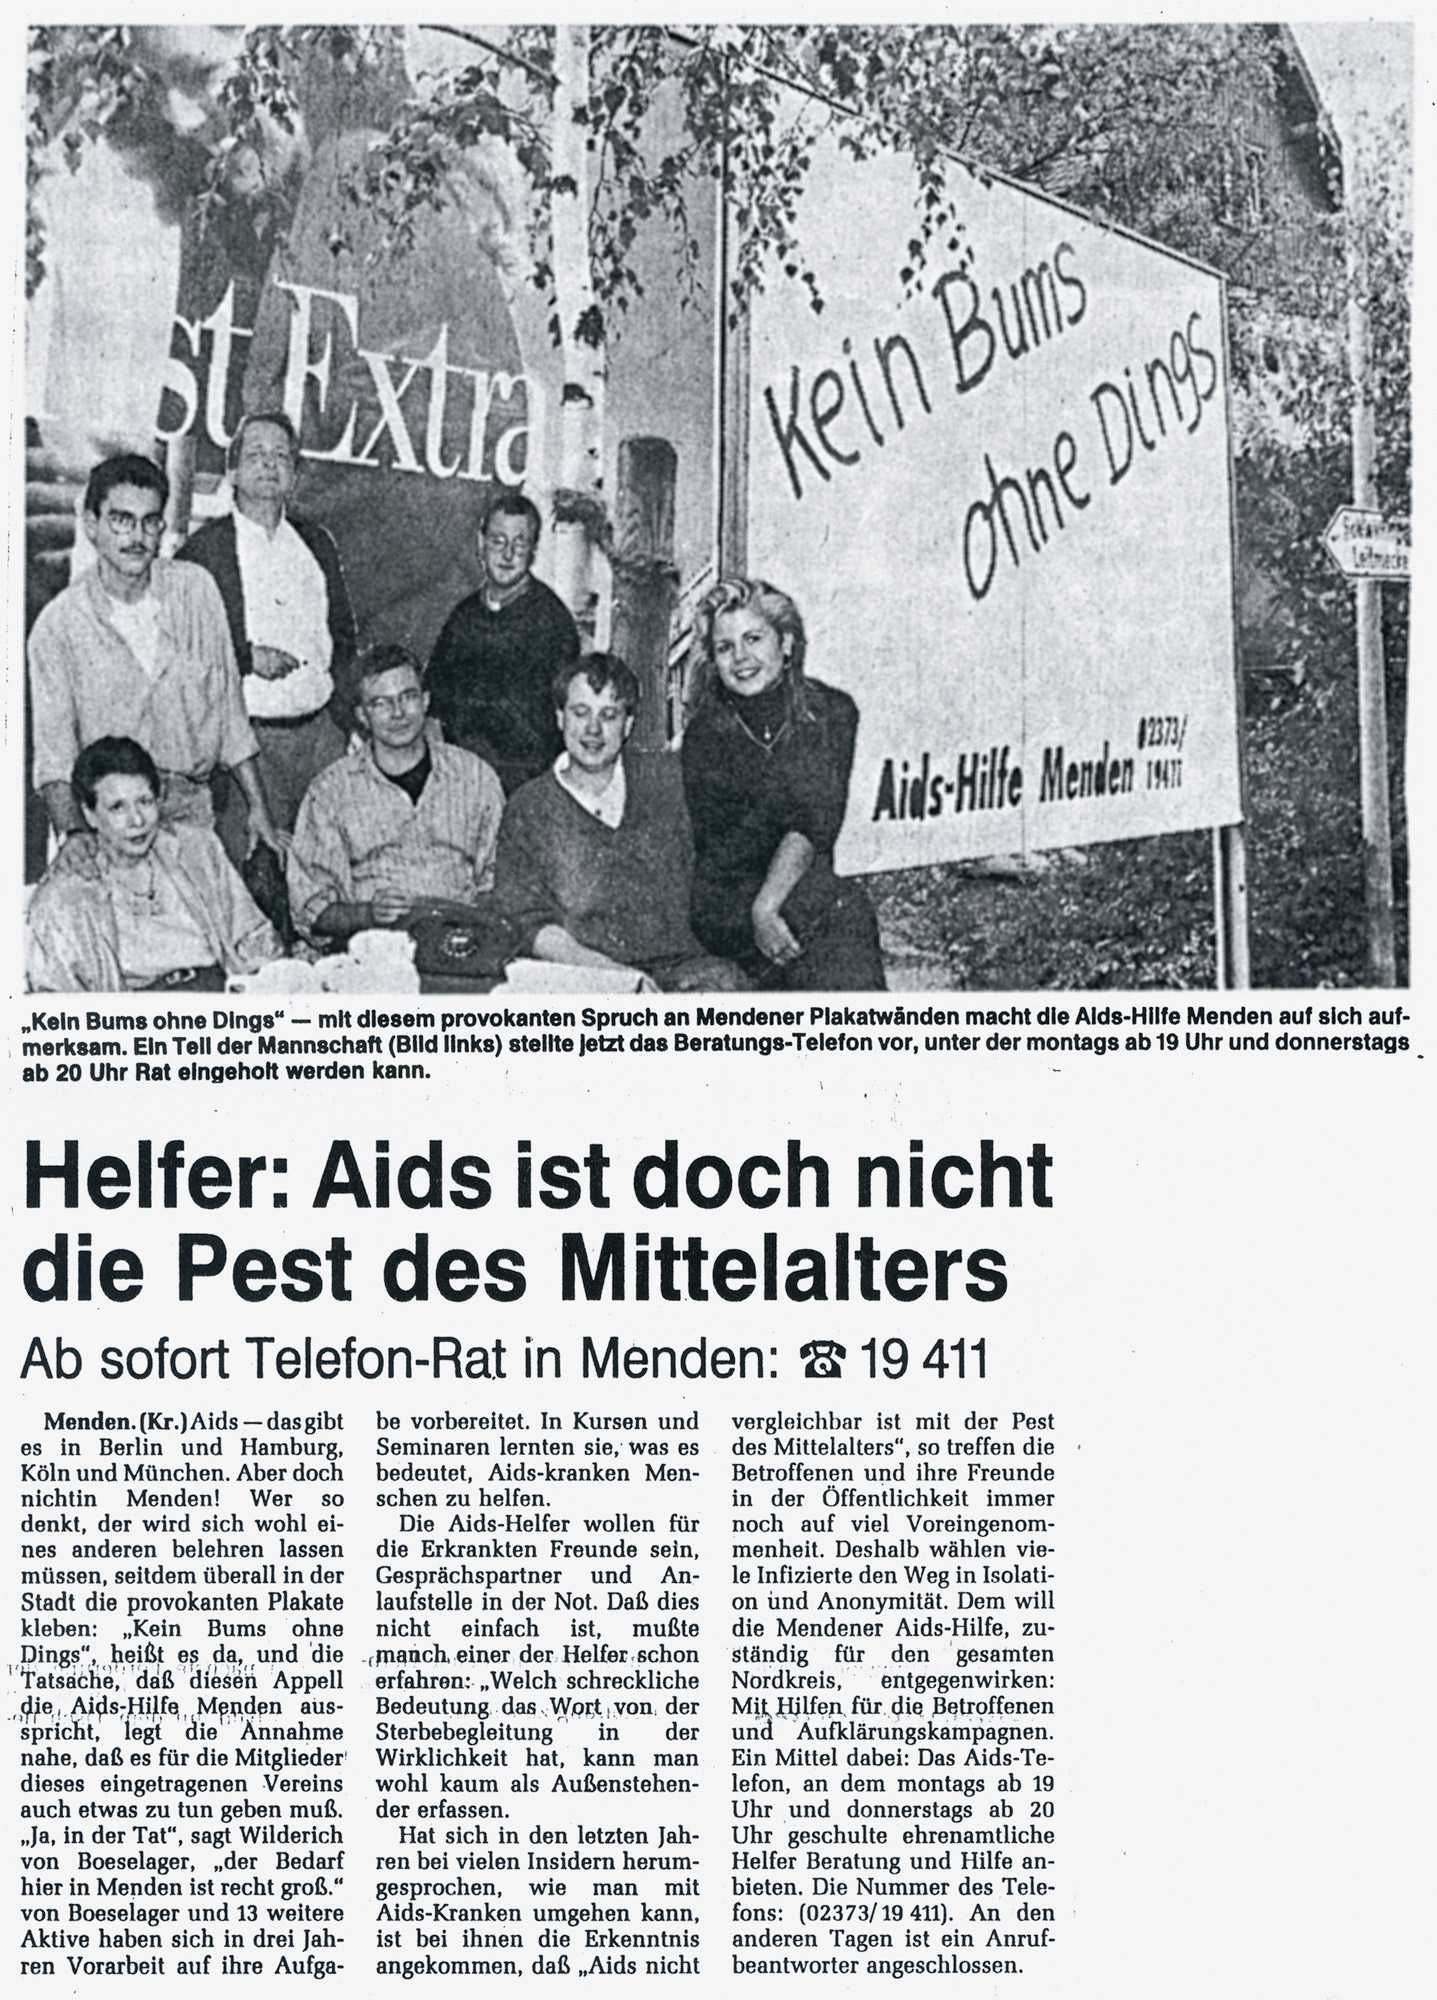 Artikel in der Westfalenpost vom 24.09.1991